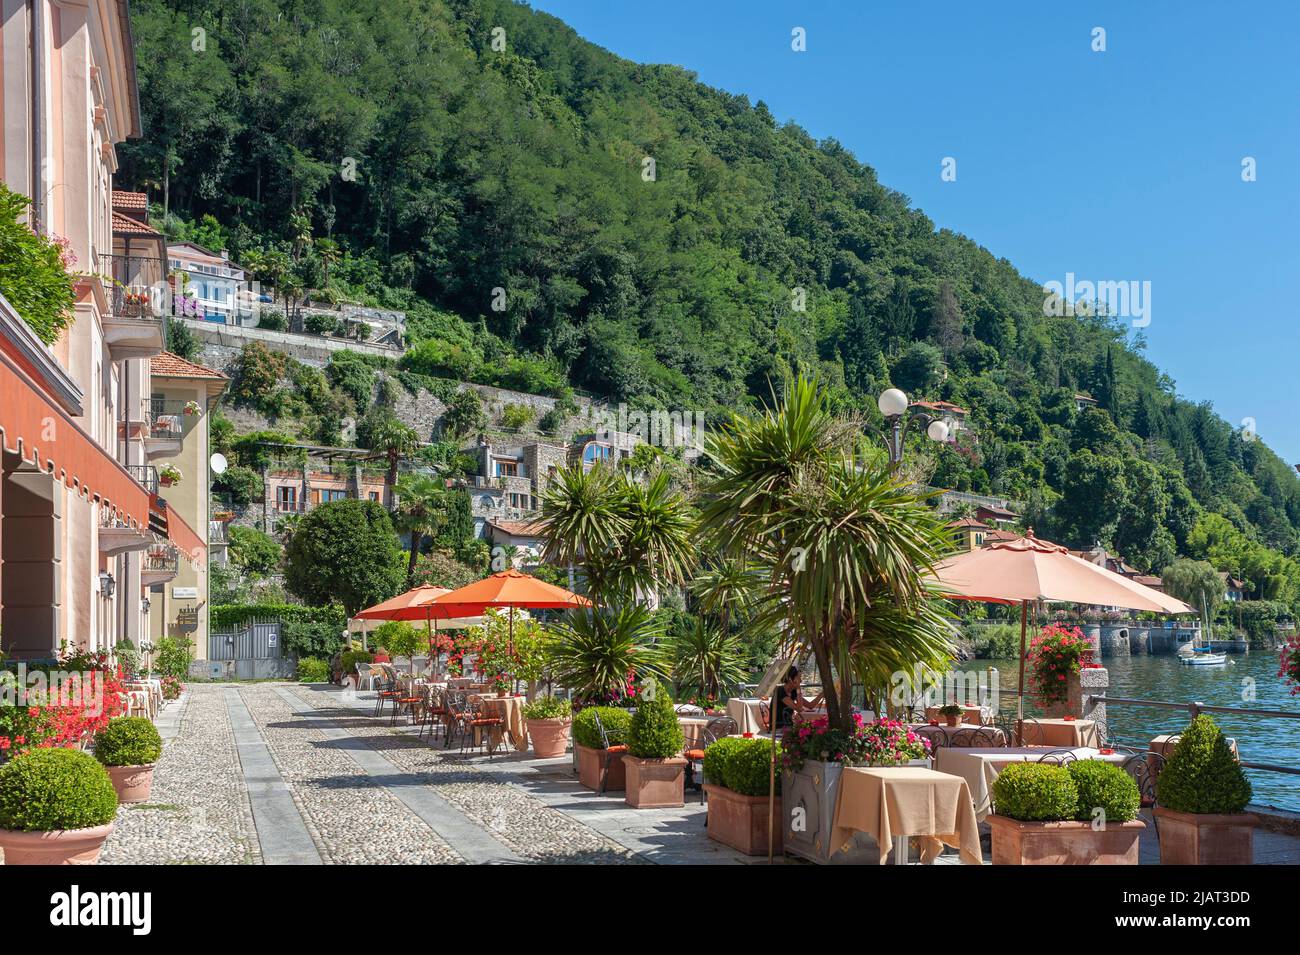 Passeggiata e ristorante sulla riva del Lago maggiore, Cannero Riviera, Piemonte, Italia, Europa Foto Stock